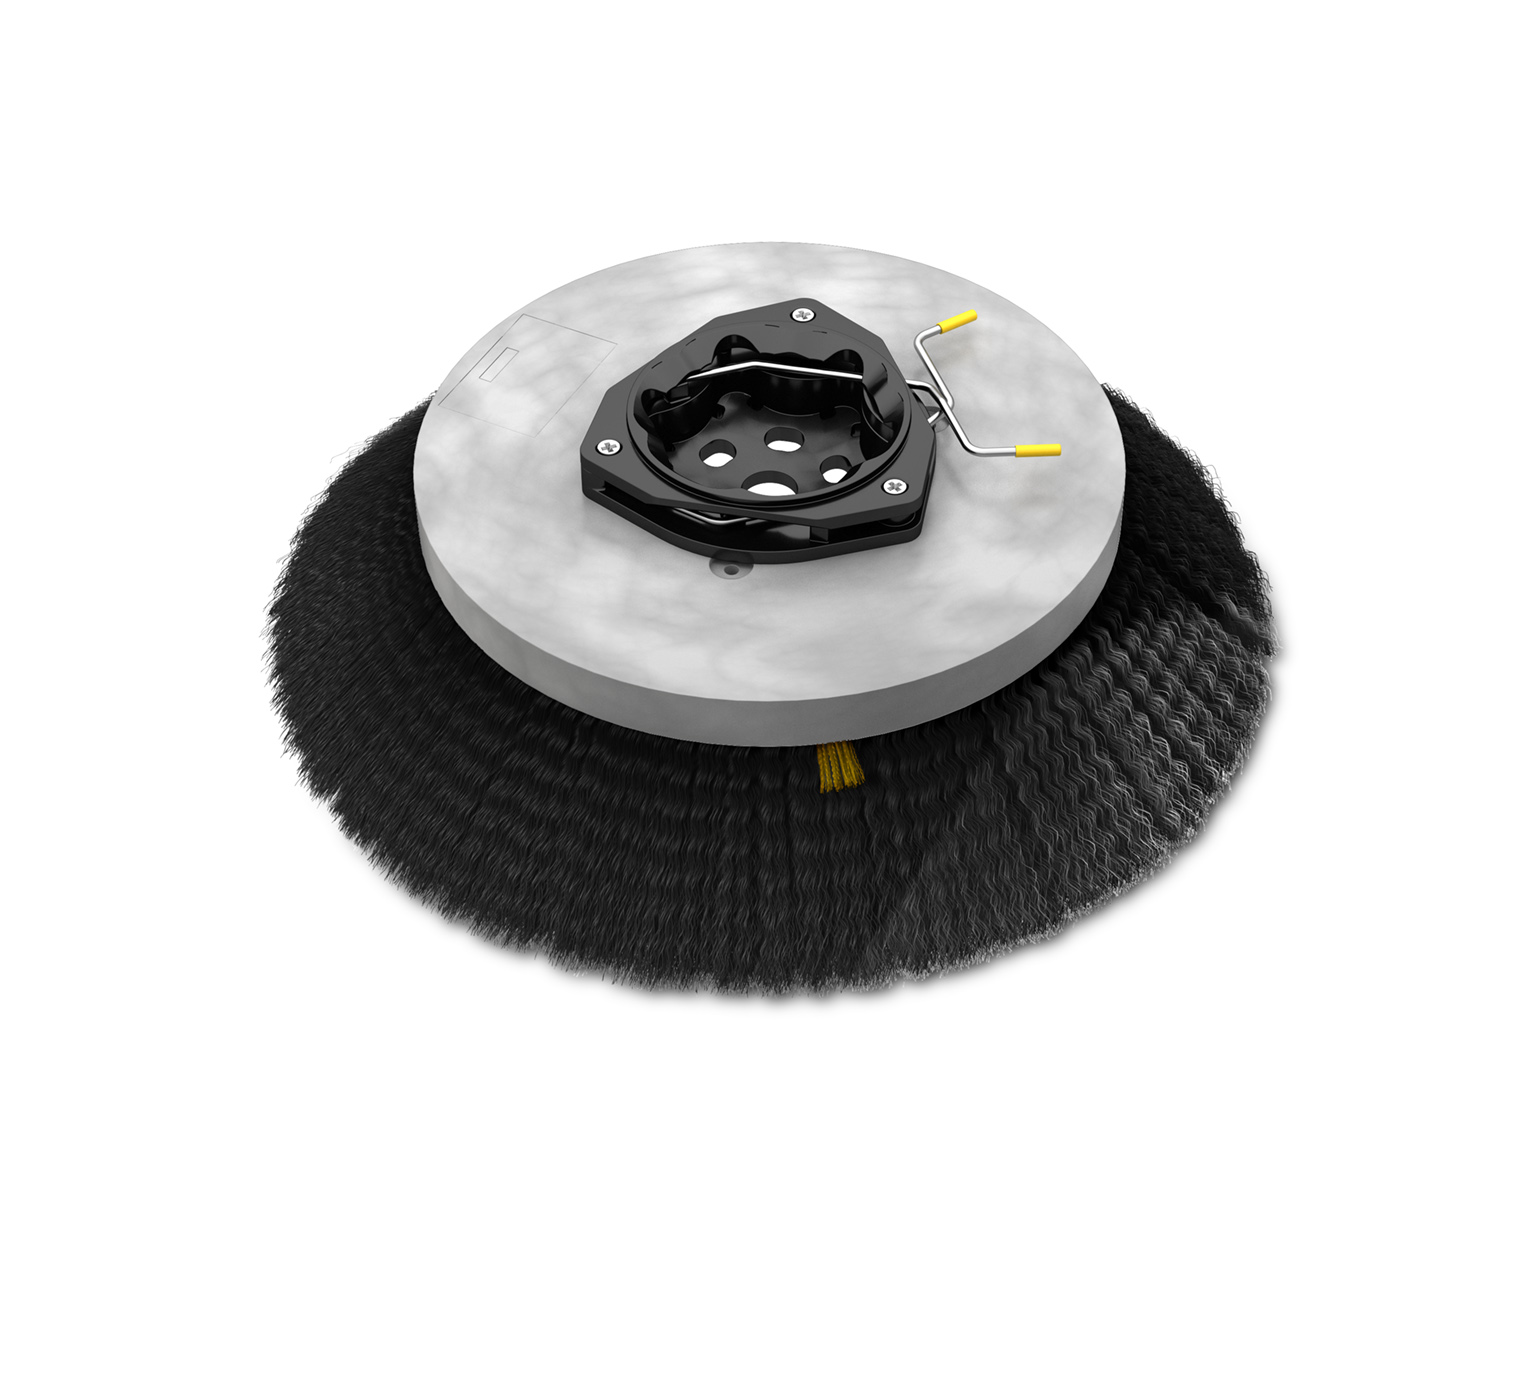 1220186 Polypropylene Disk Sweep Brush Assembly &#8211; 19 in / 482 mm alt 1